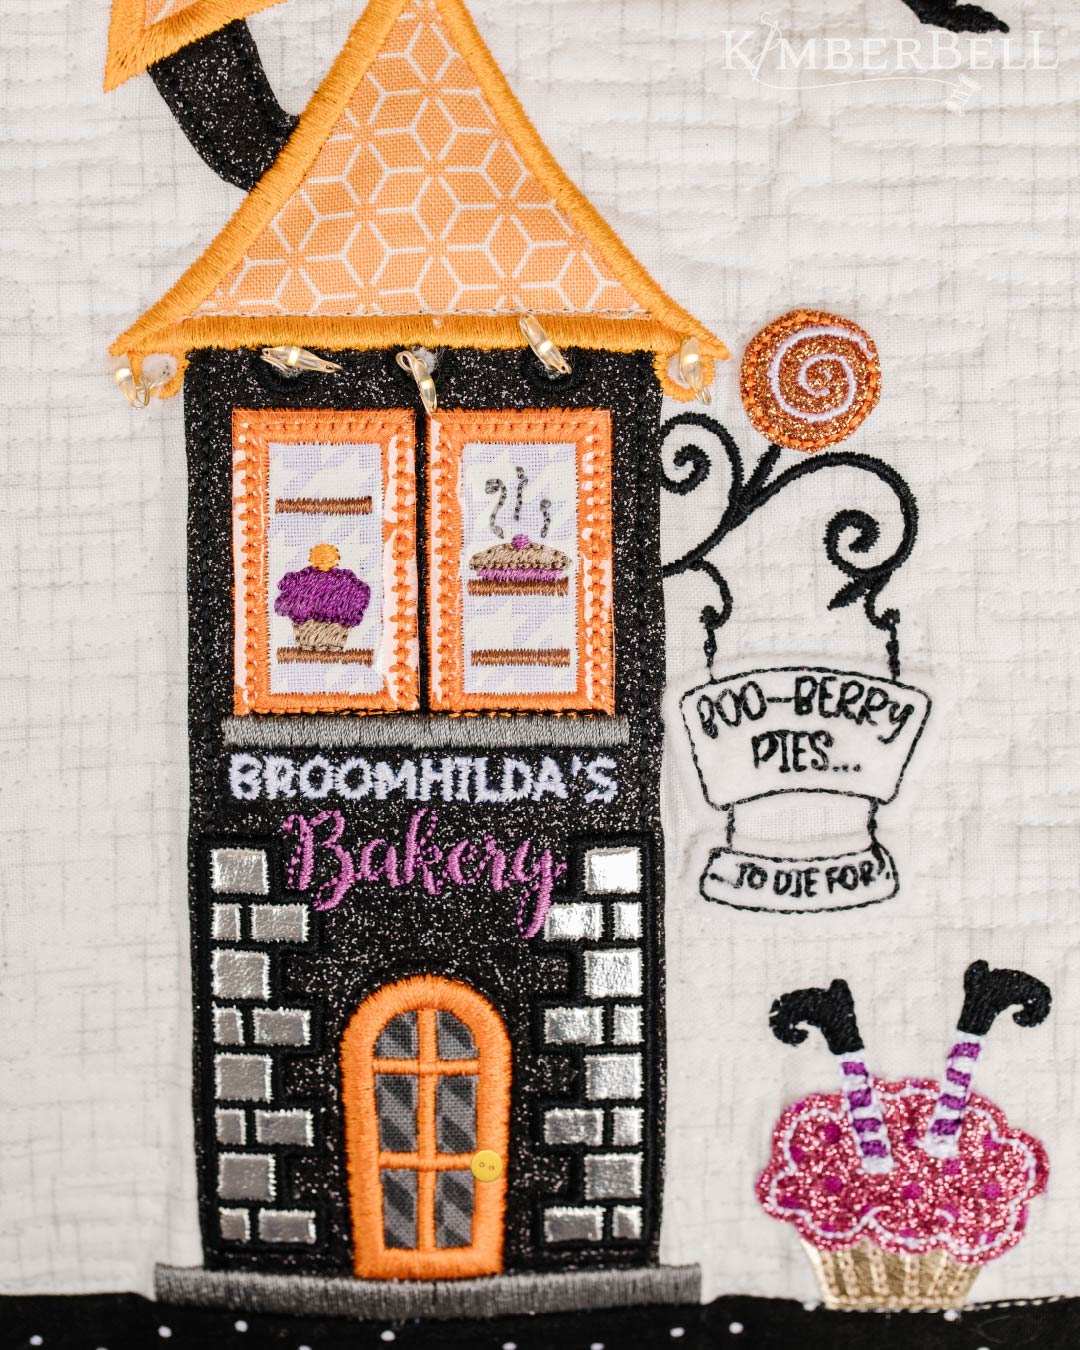 Twilight Boo-levard Broomhilda's Bakery Close-up